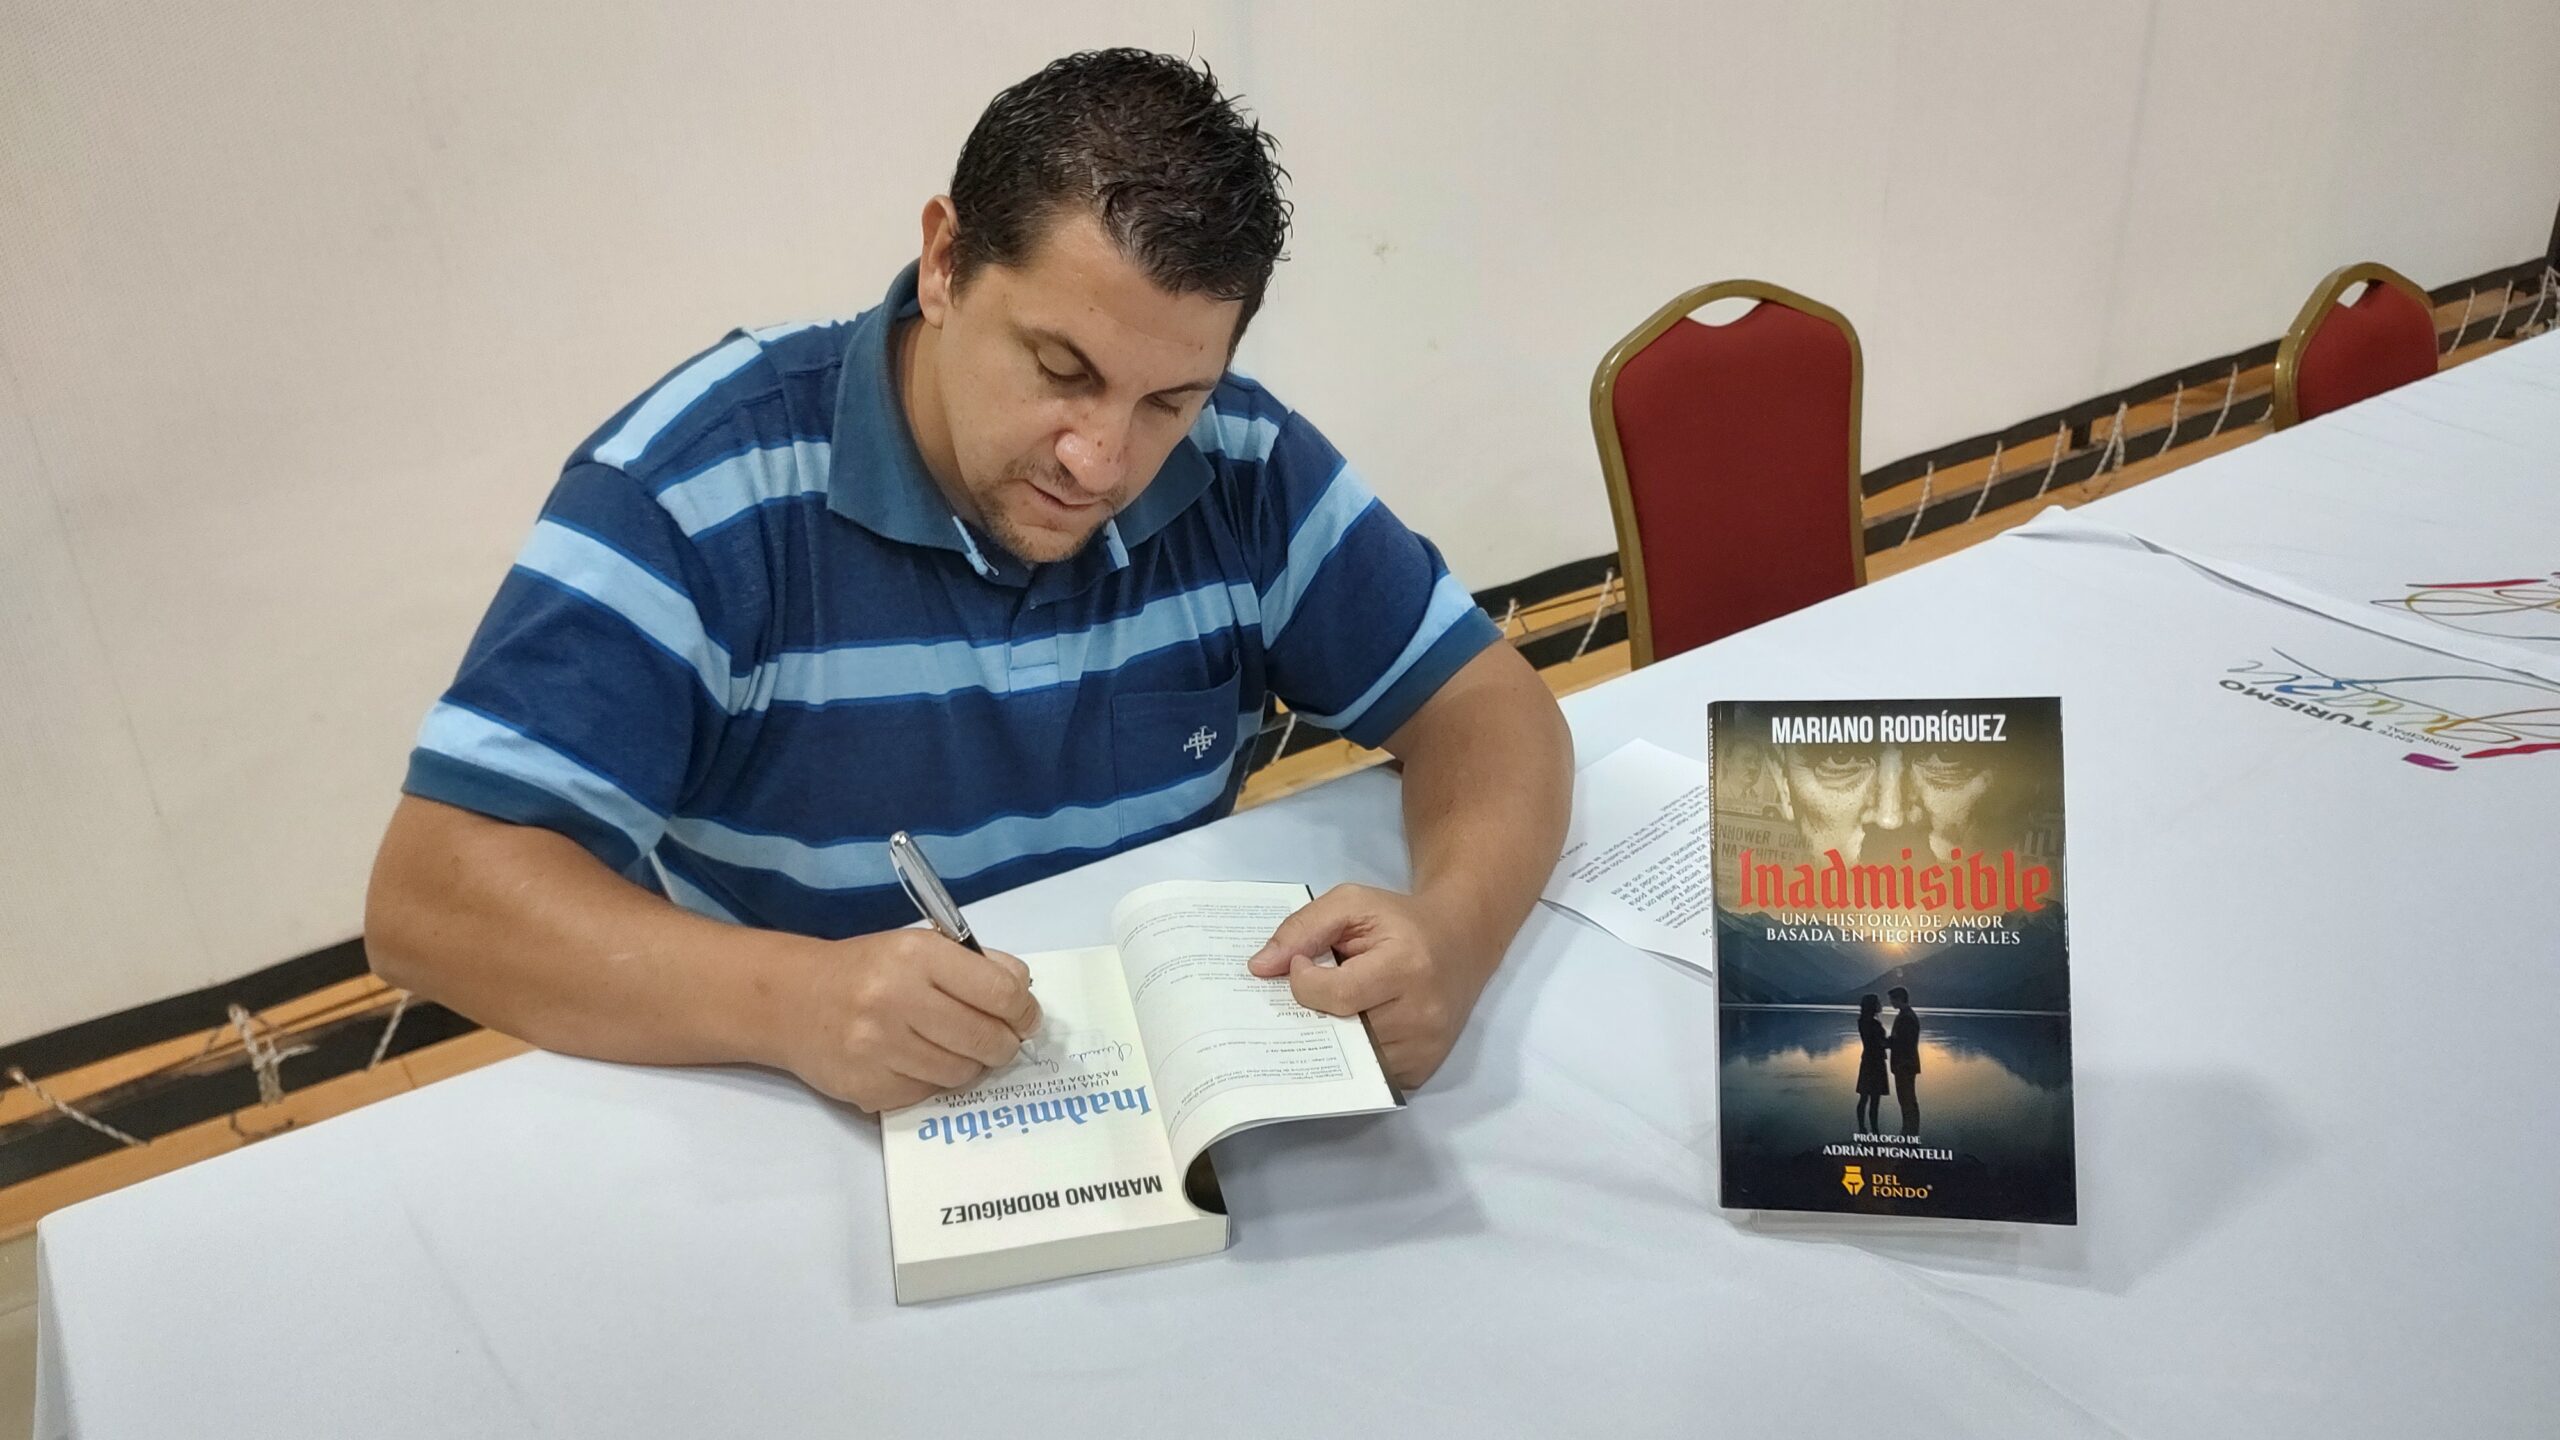 Iguazú: presentaron Inadmisible, una novela romántica que habla sobre la presencia de nazis en Argentina